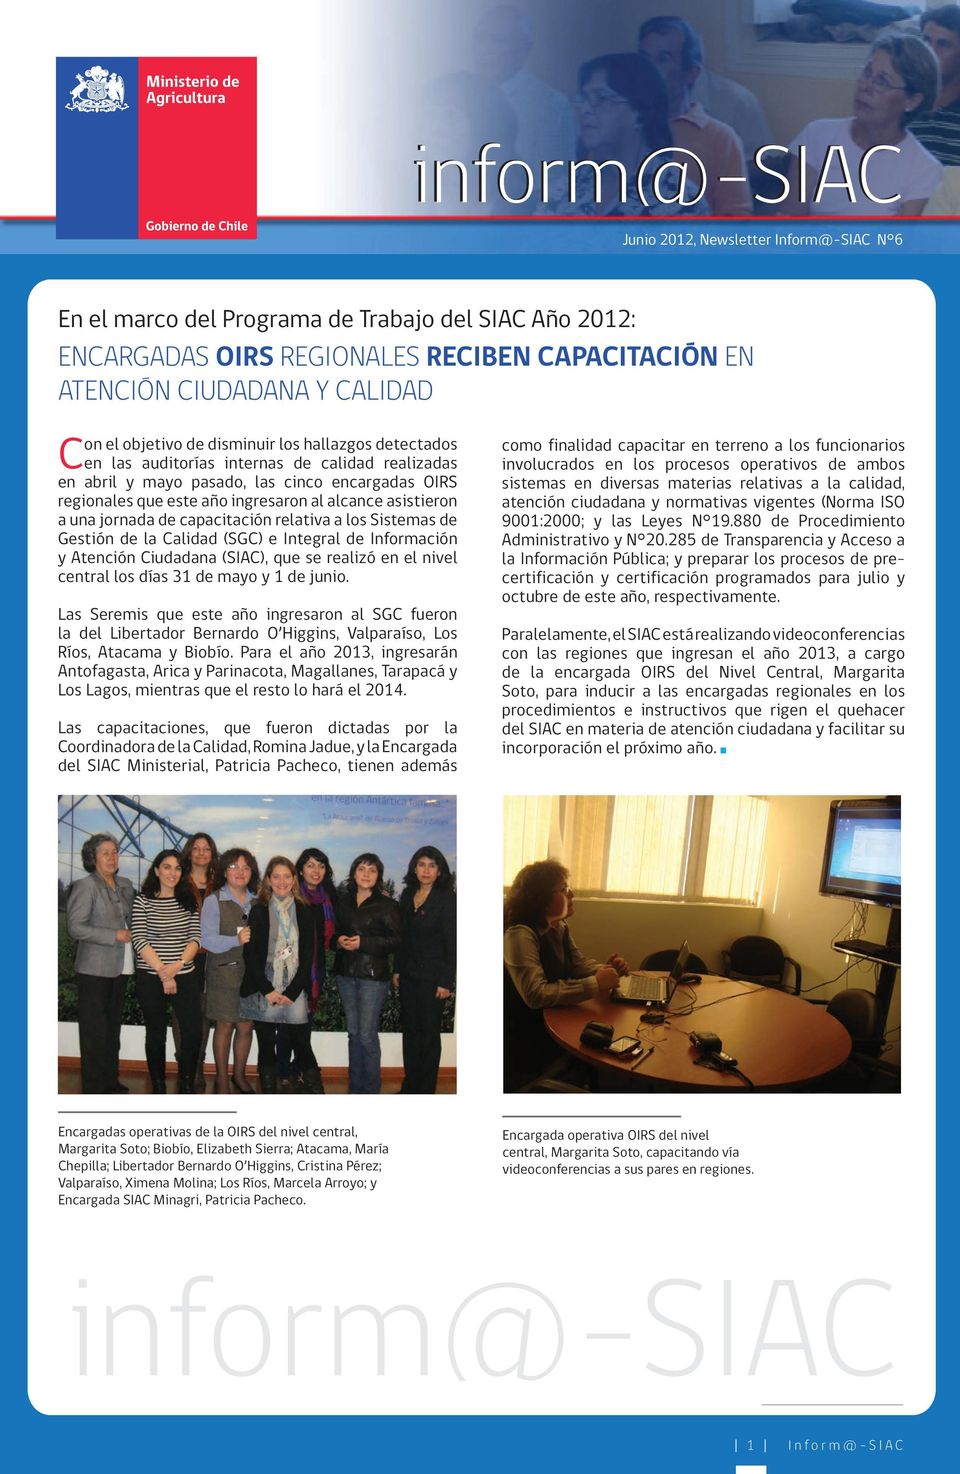 Sistemas de Gestión de la Calidad (SGC) e Integral de Información y Atención Ciudadana (SIAC), que se realizó en el nivel central los días 31 de mayo y 1 de junio.